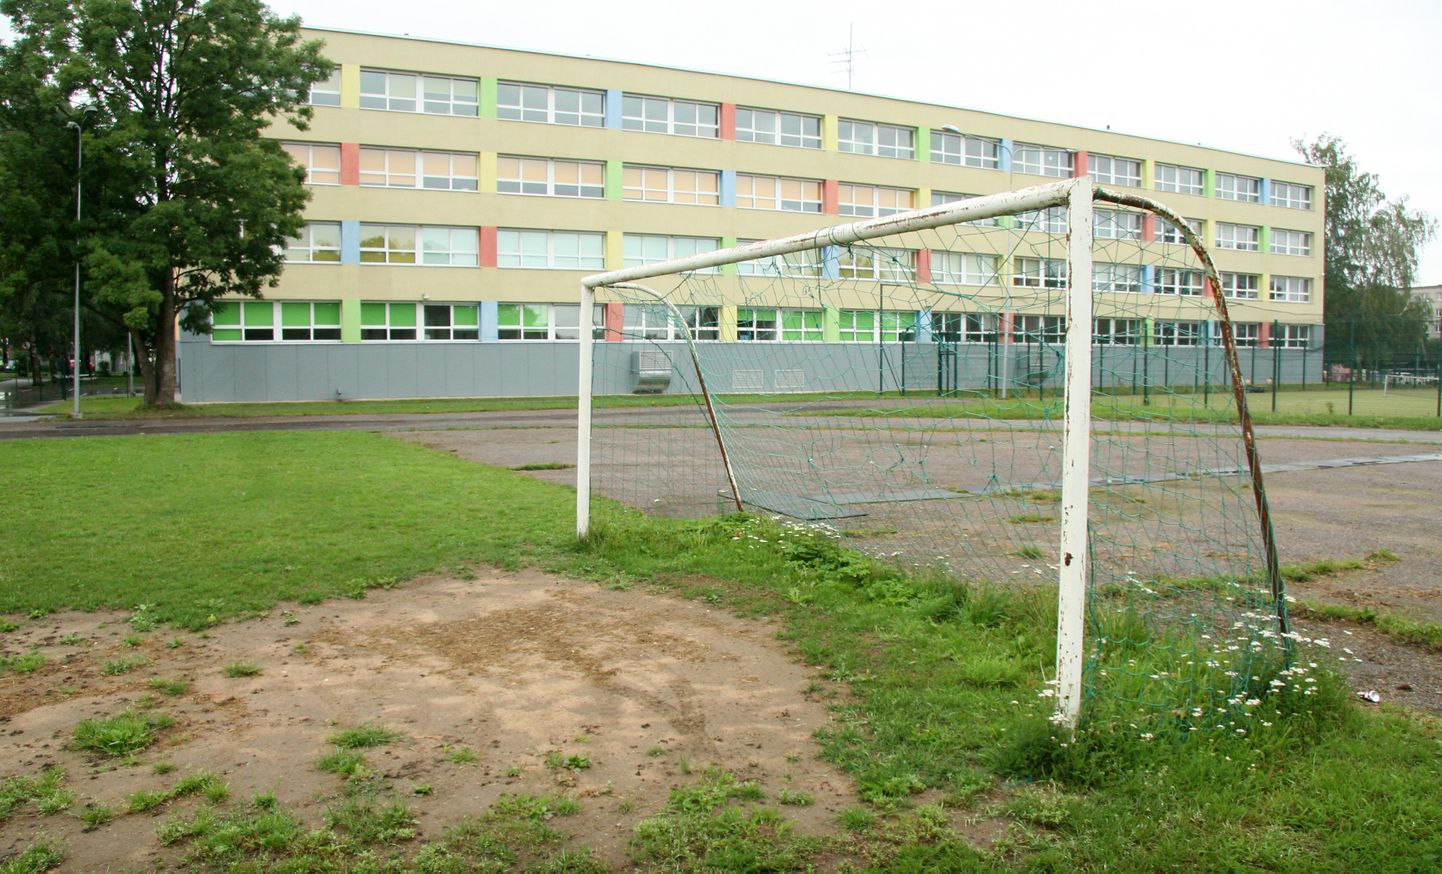 Hiljemalt järgmise aasta kevadel peaks Jõhvi turu ja raudtee vahele jääva vene põhikooli staadionil olema hoopis värskem ja nüüdisaegsem ilme.